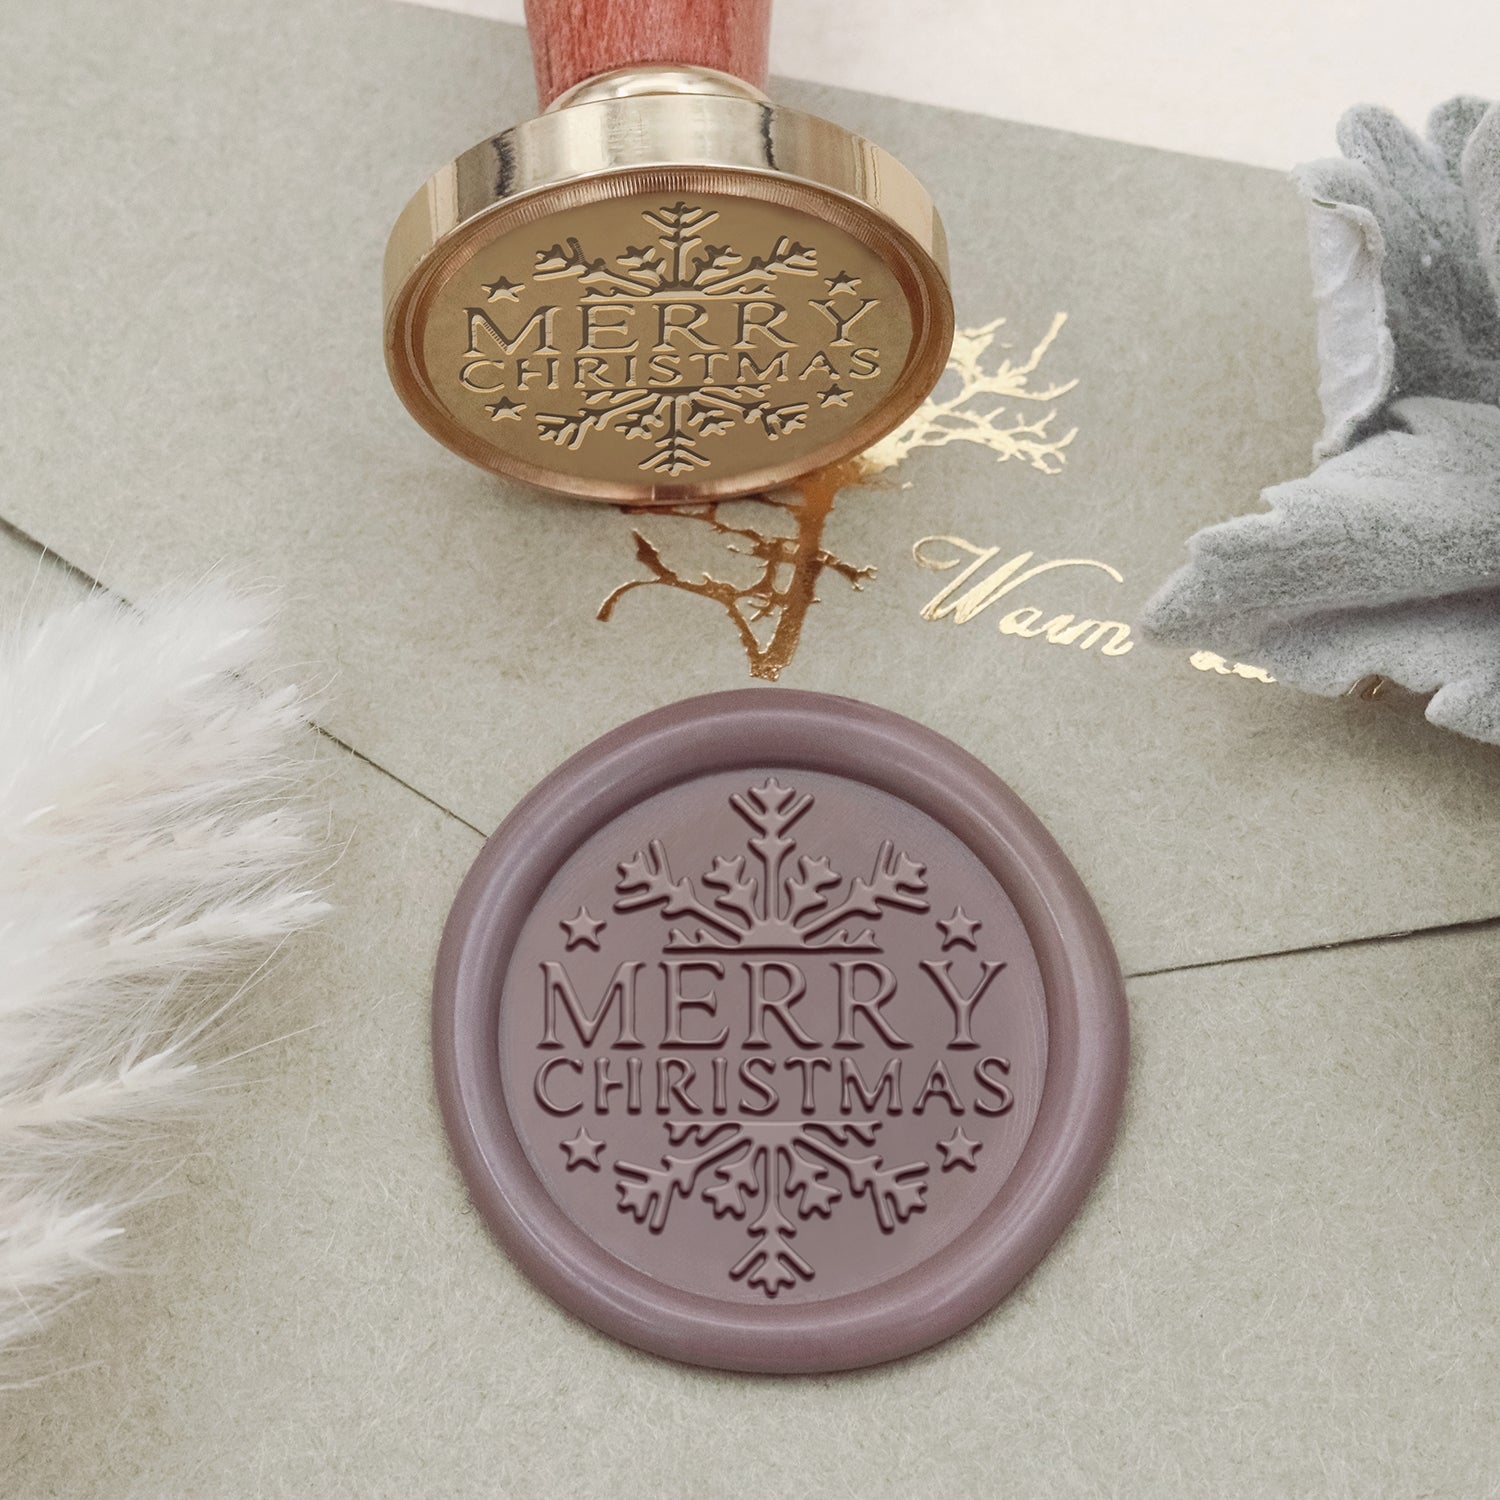 Snowflake Wax Seal Stamp Premium Kit